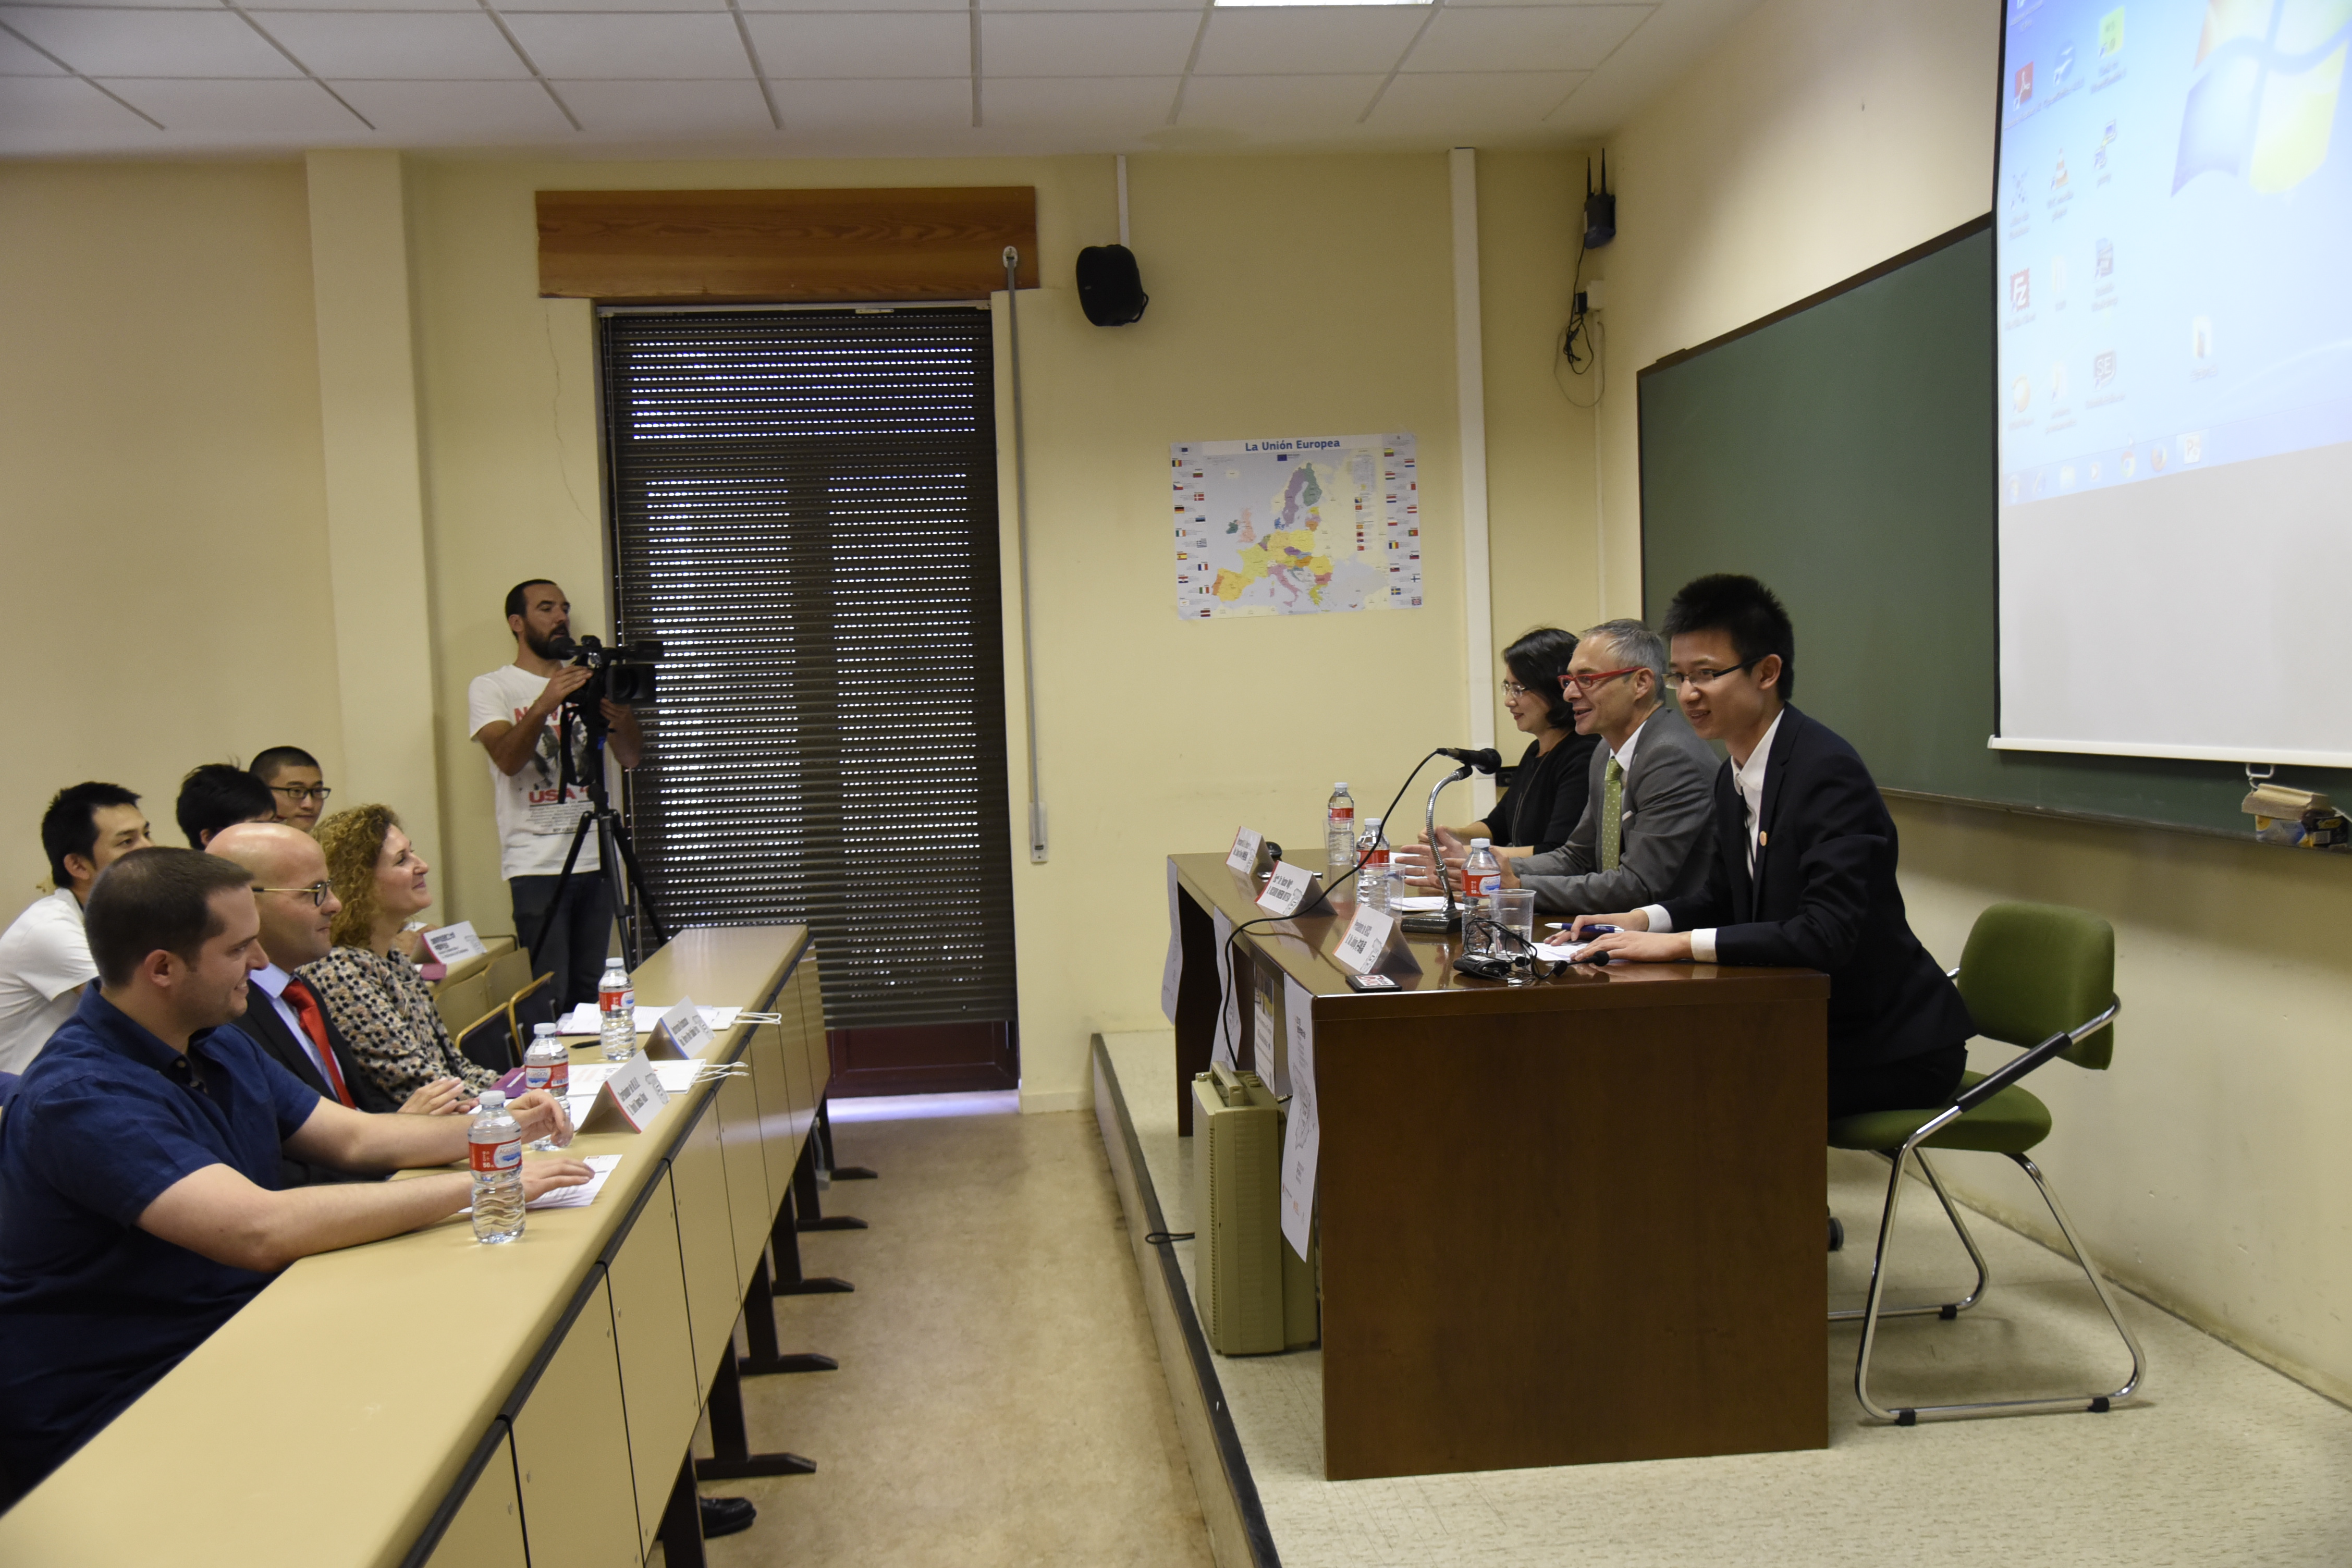 La Universidad de Salamanca acoge la Reunión anual de las asociaciones de estudiantes e investigadores chinos en España